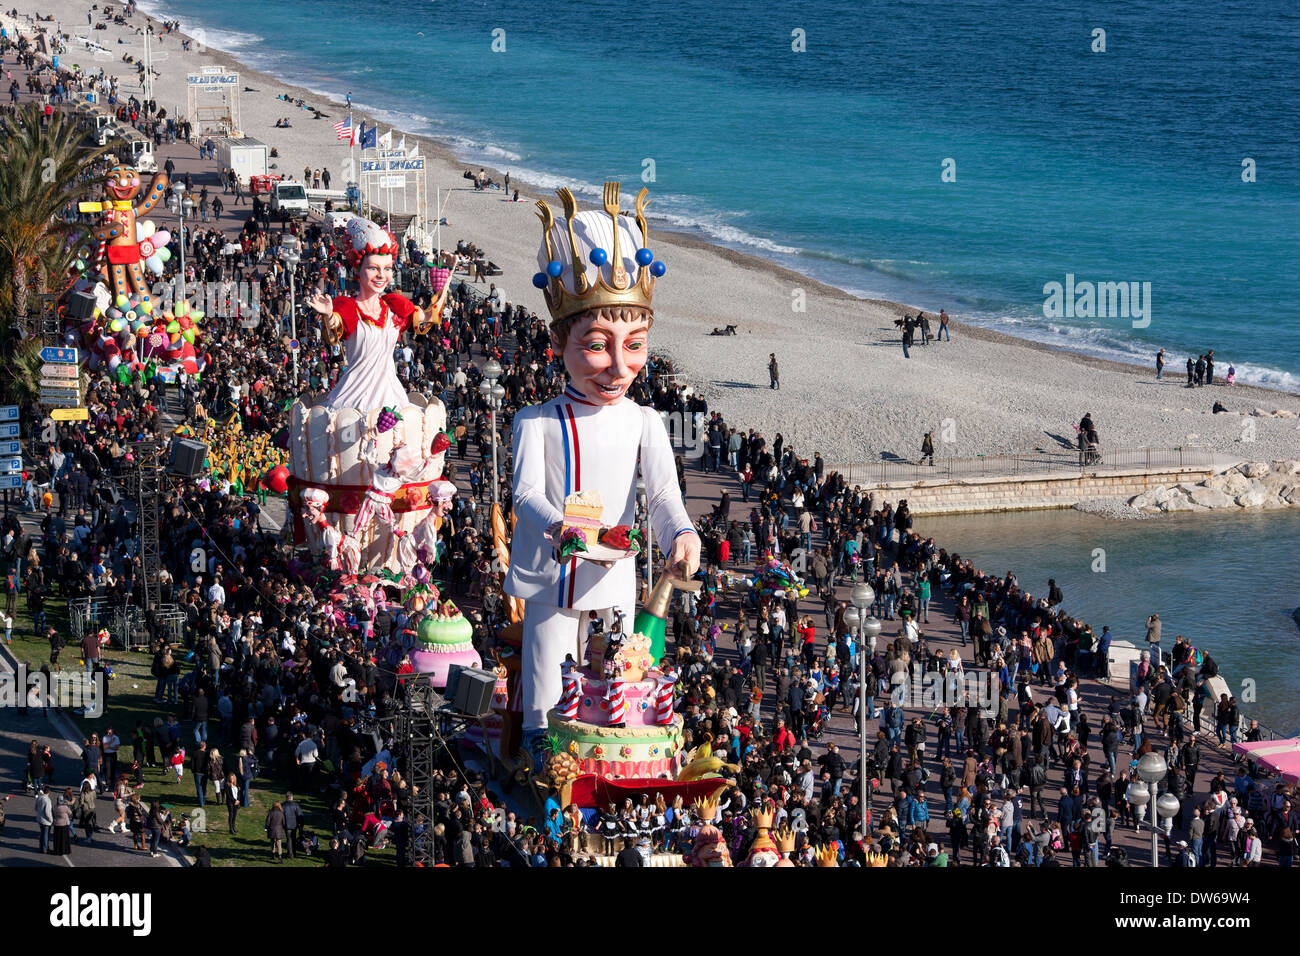 Défilé du Carnaval de Nice en 2014, le Roi sur la Promenade des Anglais.Nice, Alpes-Maritimes, Côte d'Azur, France. Banque D'Images